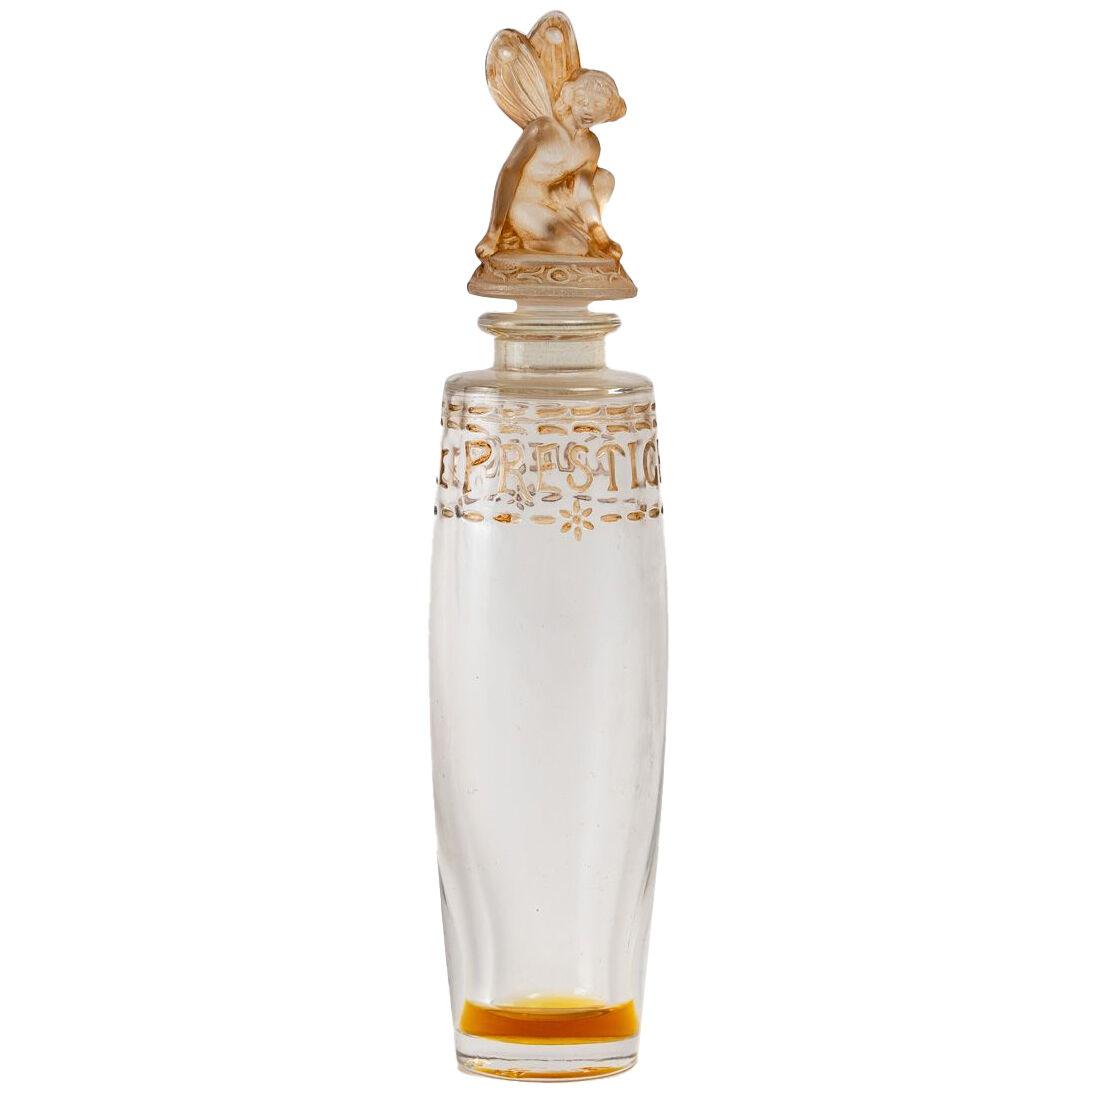 1925 Julien Viard Perfume Bottle Le Prestige Pour Gueldy Glass Sepia Patina